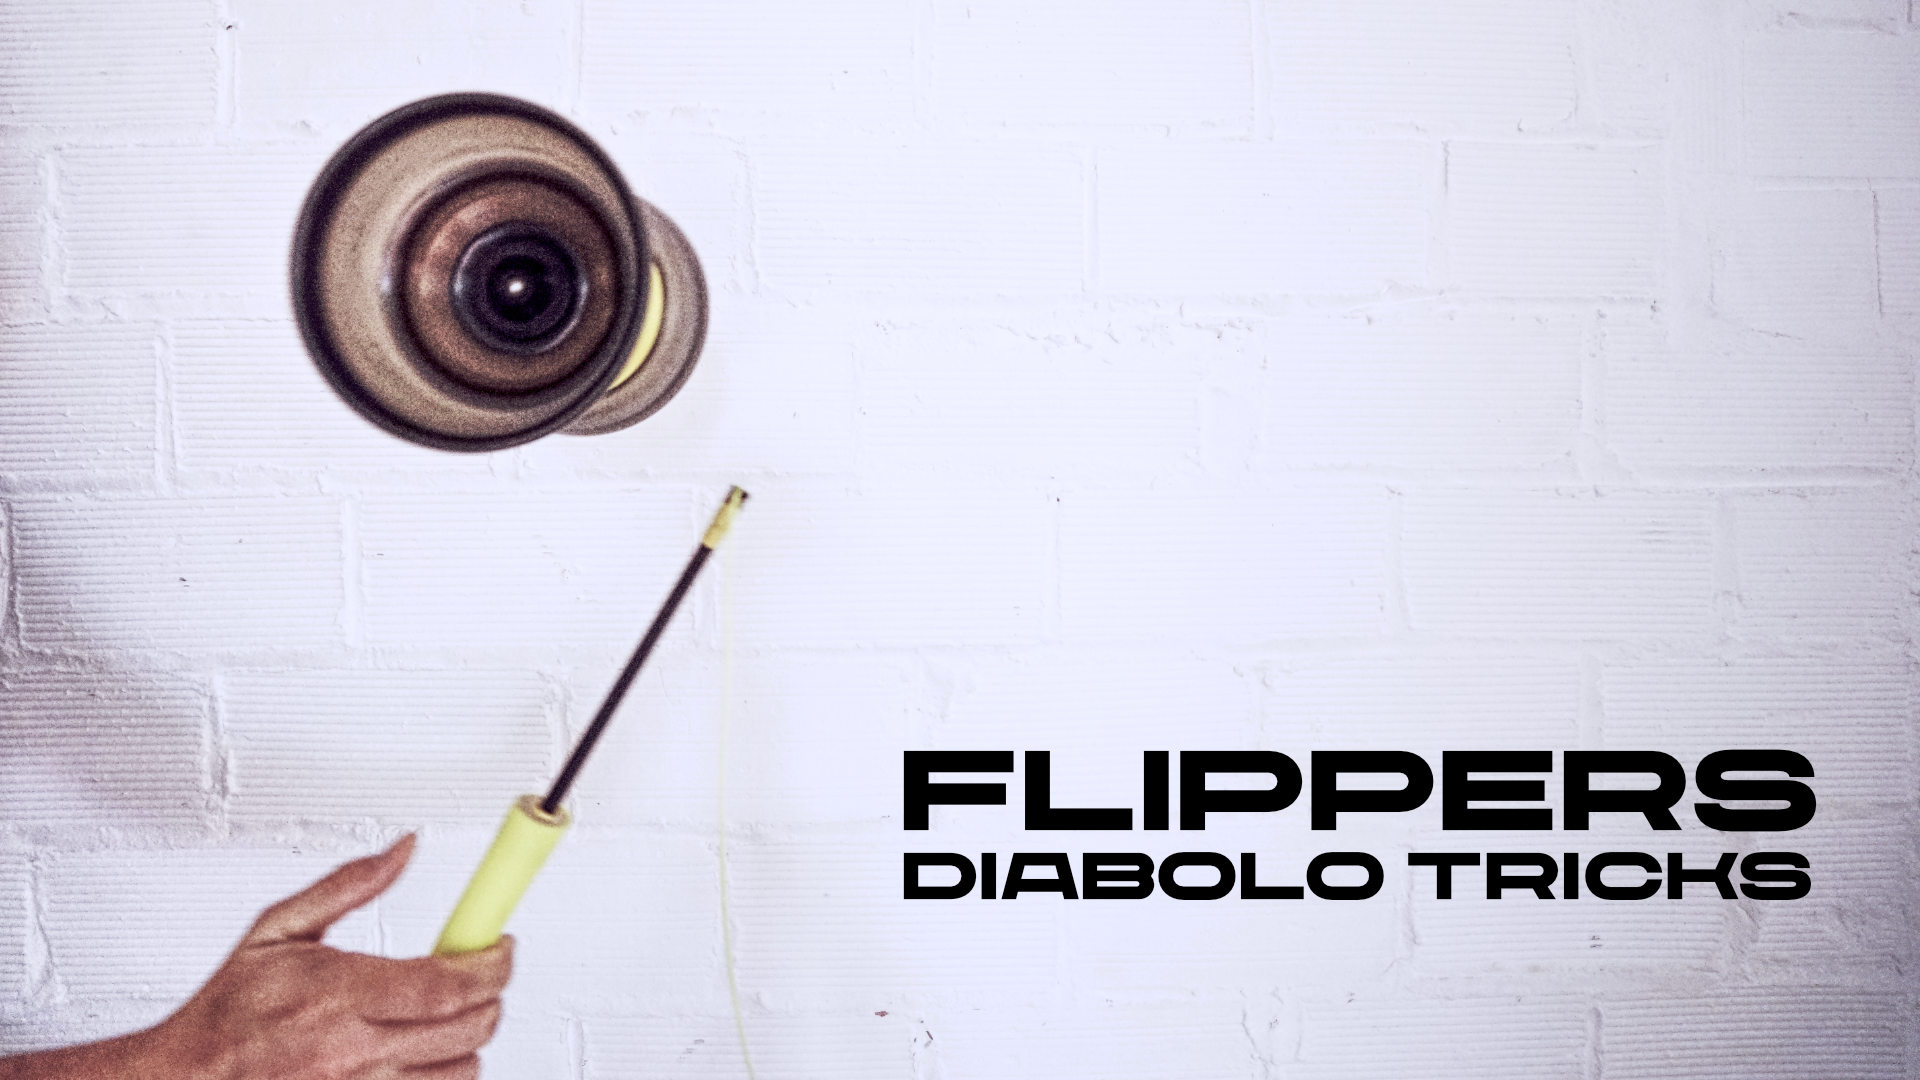 flippers diabolo tricks blog troposferaxyz by didac gilabert 1 → troposfera.xyz